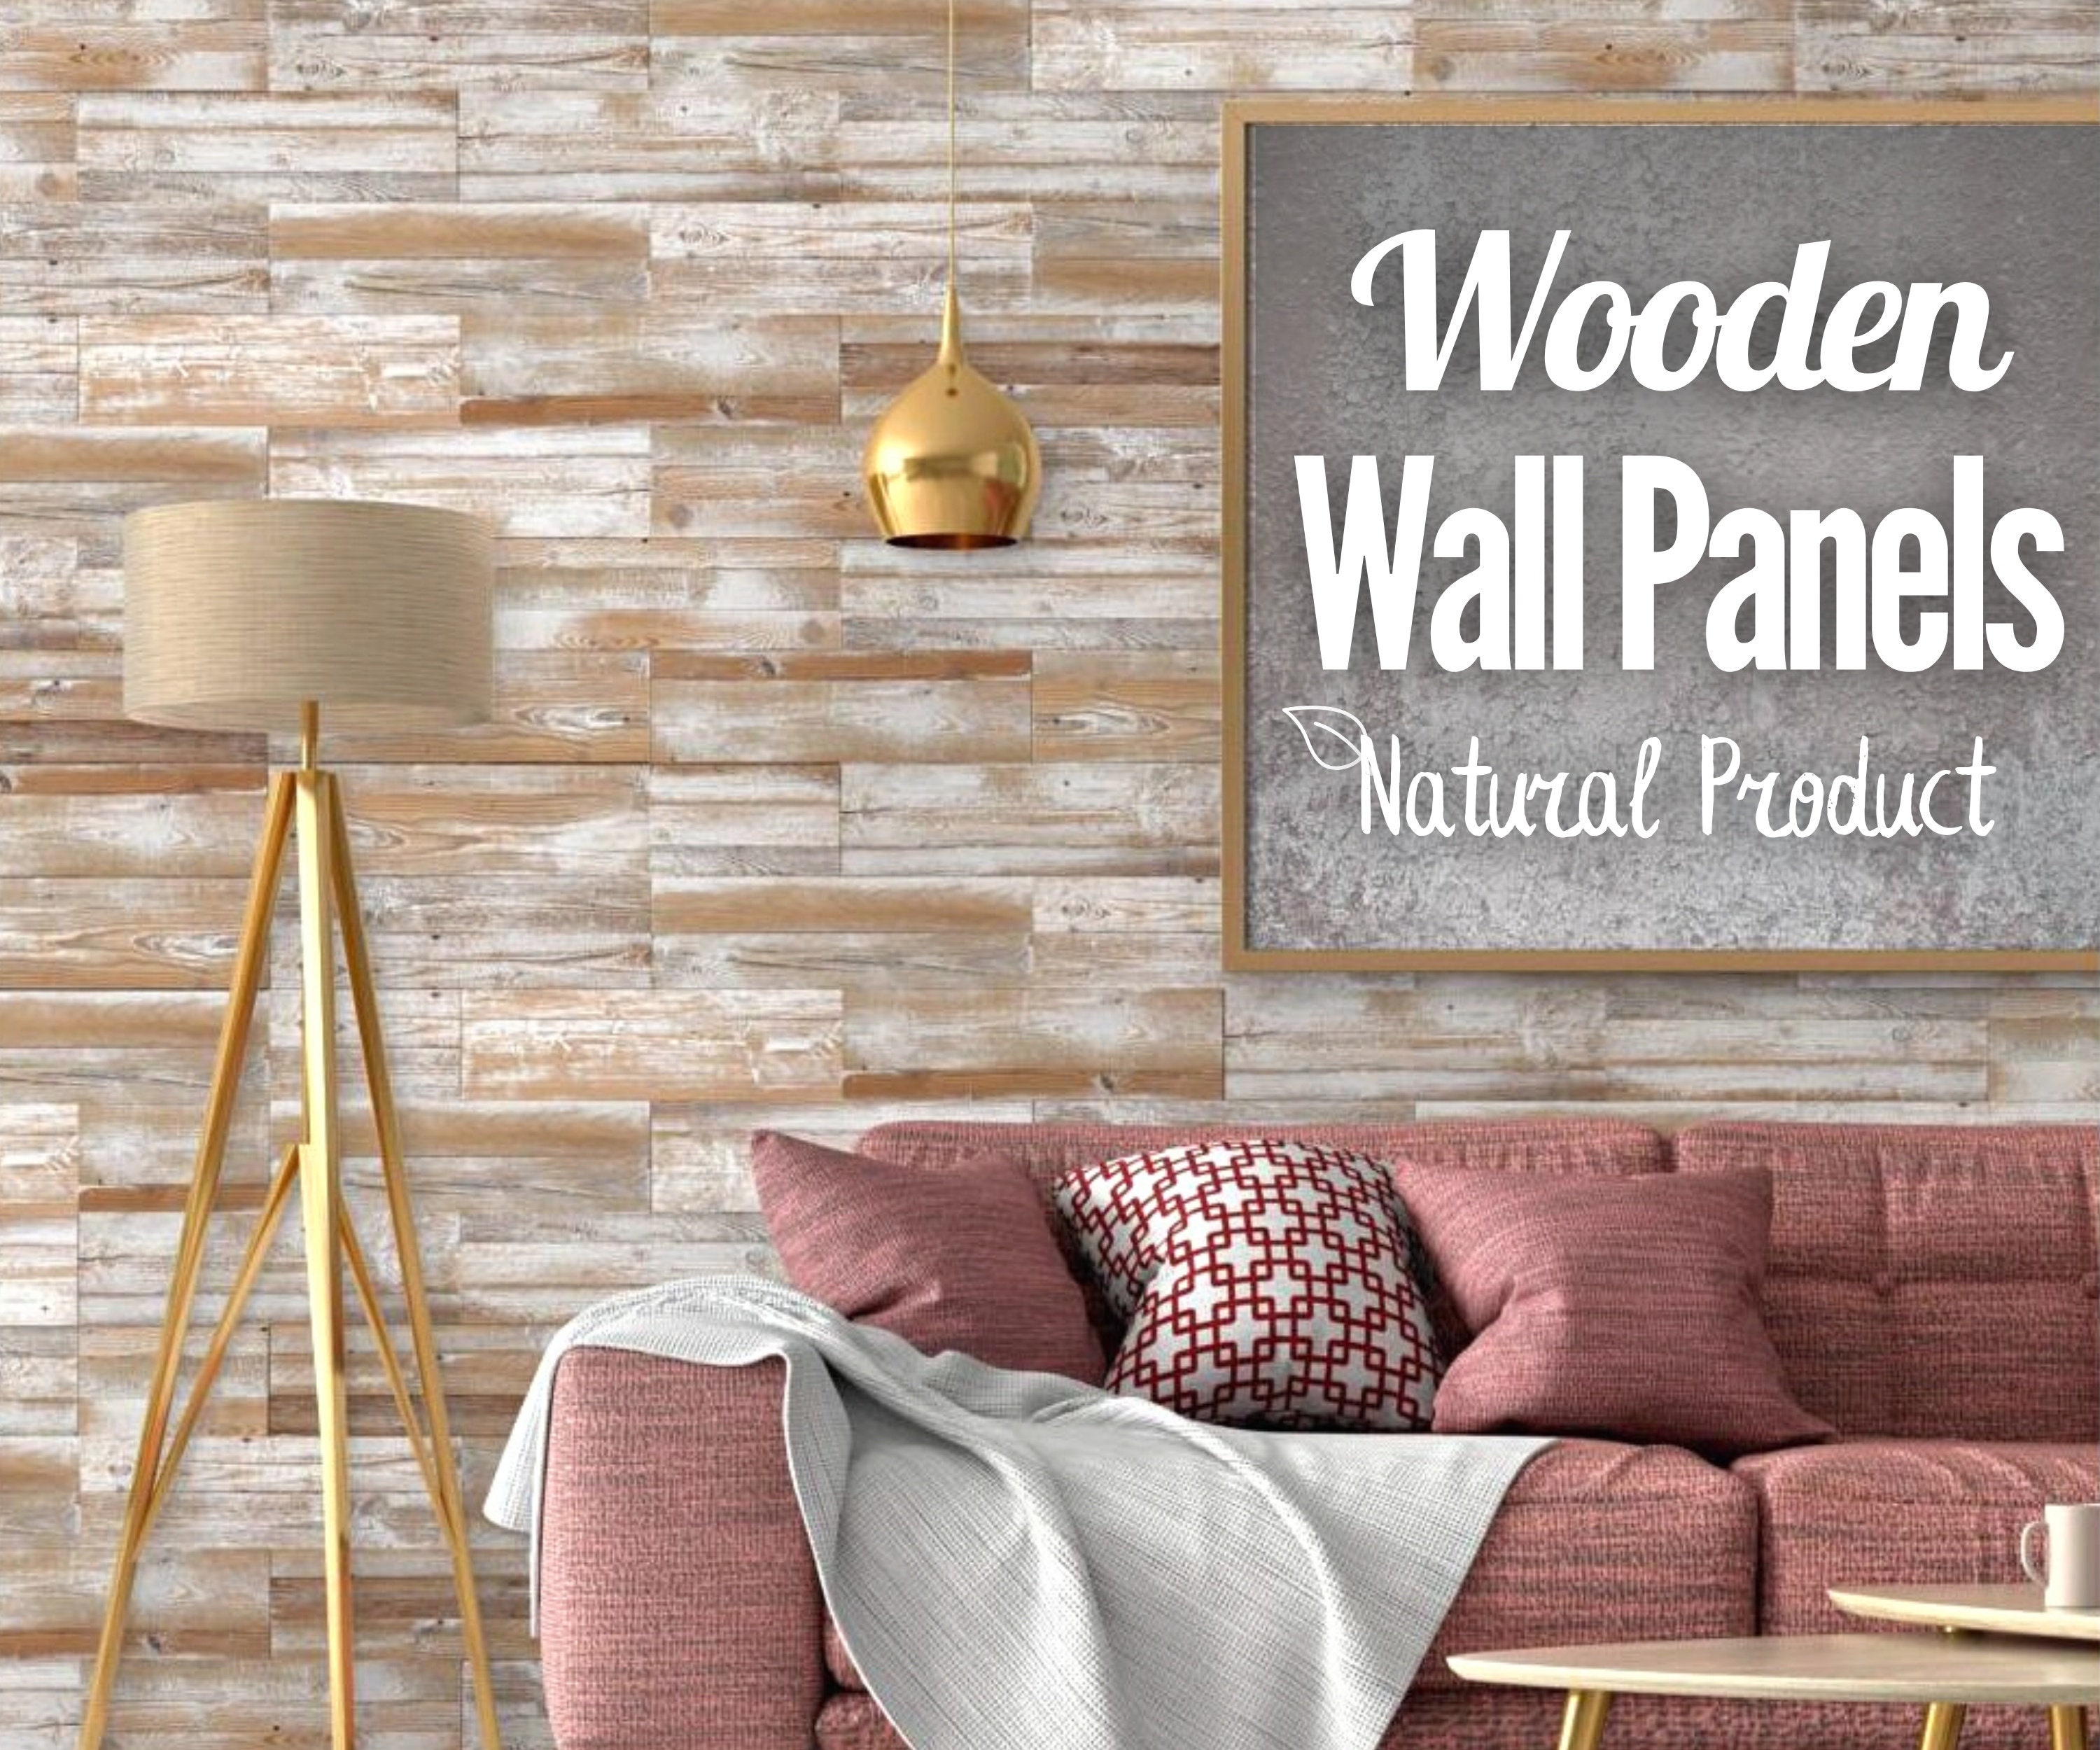 Tableros de paneles decorativos de pared de madera, tablones de azulejos 3D  de pared de madera en tablones de revestimiento de pared rústicos grises y  beige, decoración de interiores Accent Wall DIY 